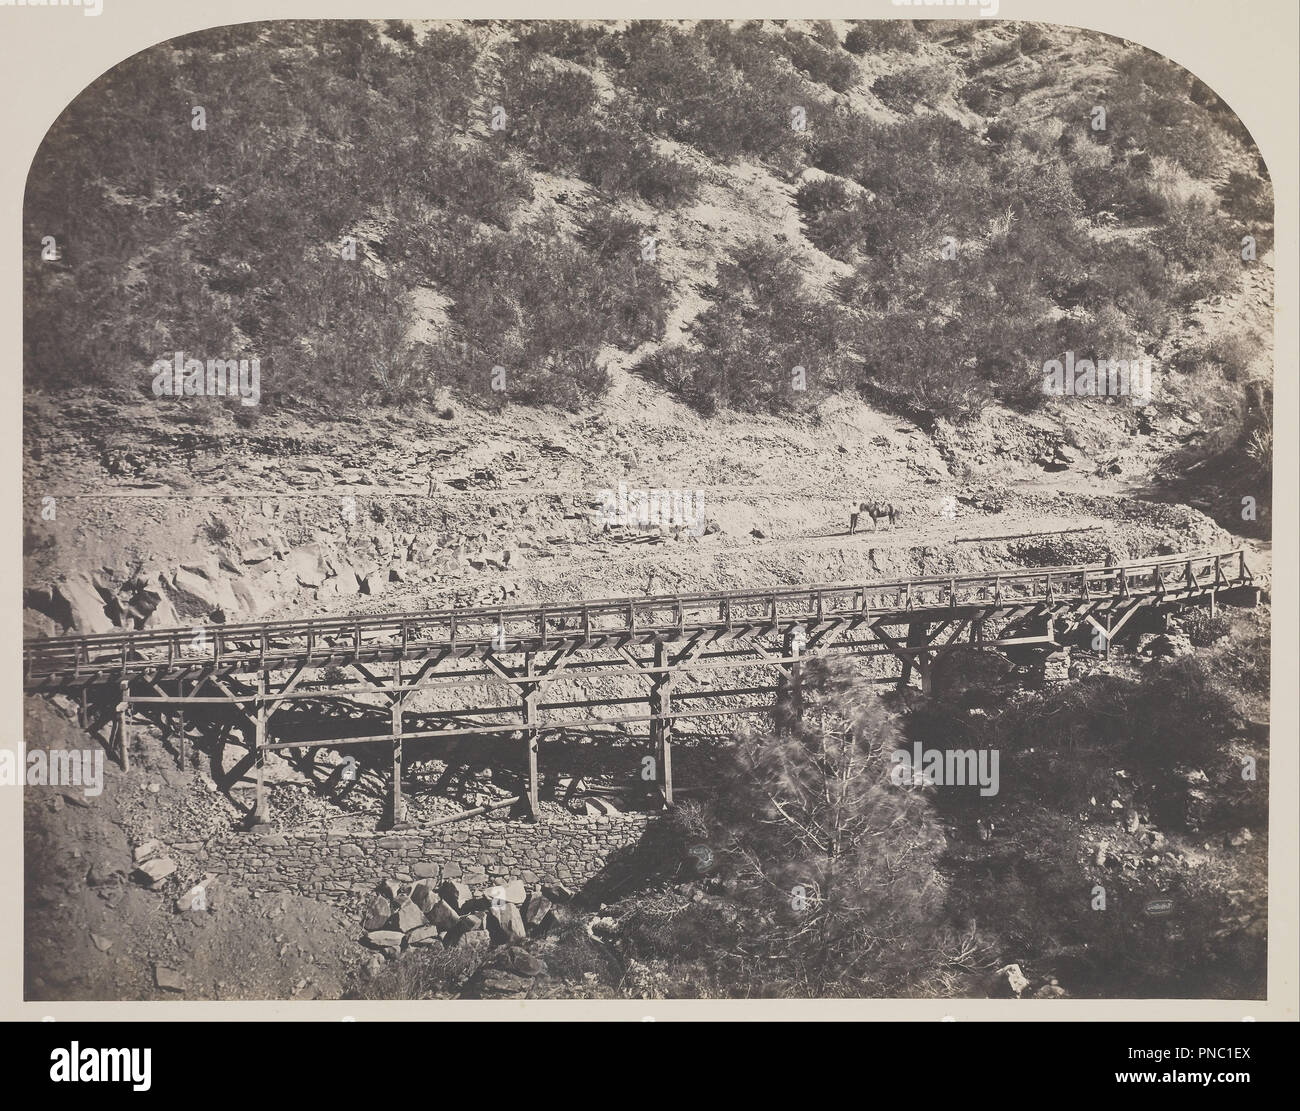 Eisenbahnbrücke, Kap Hoorn, Mariposa County. Datum/Zeitraum: 1860. Drucken. Salz. Höhe: 322 mm (12.67 in); Breite: 406 mm (15.98 in). Autor: Carleton Watkins. Stockfoto